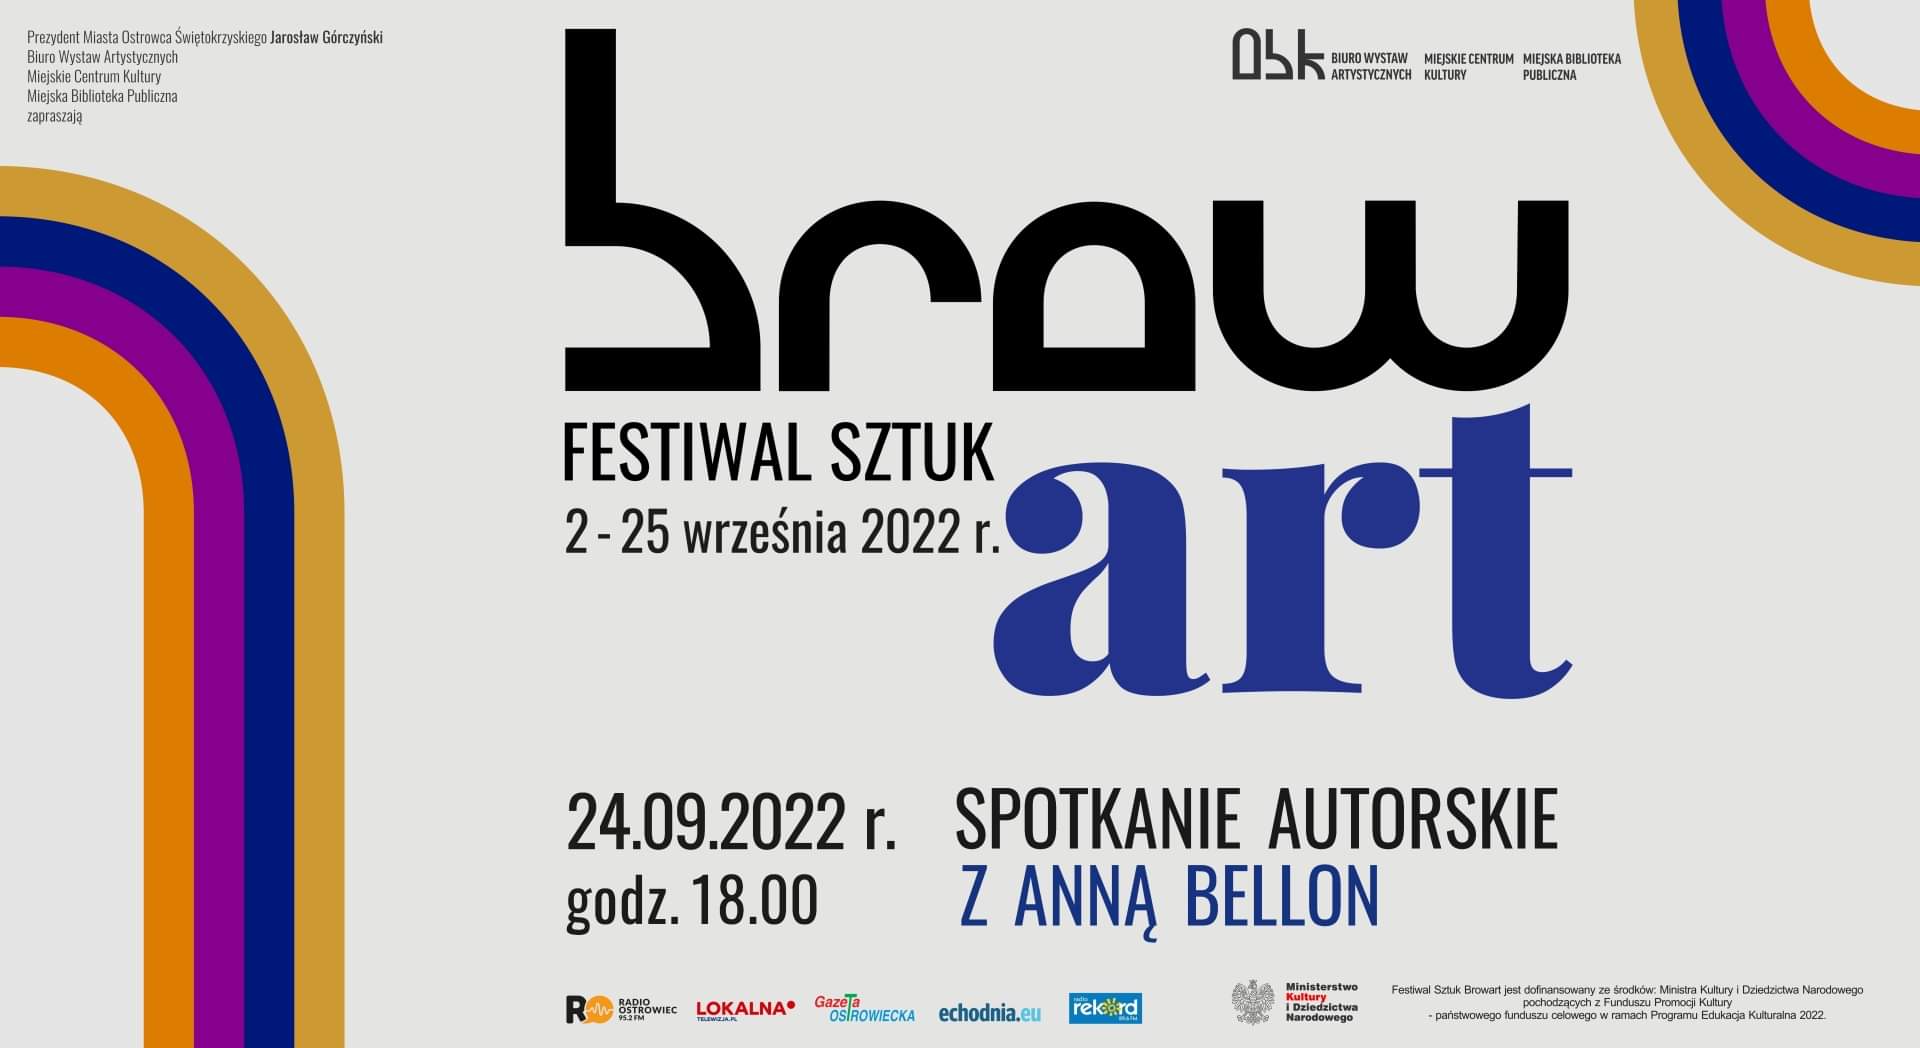 Festiwal Sztuki brow art. 11 września 2022 spotkanie autorskie z Anną Bellon